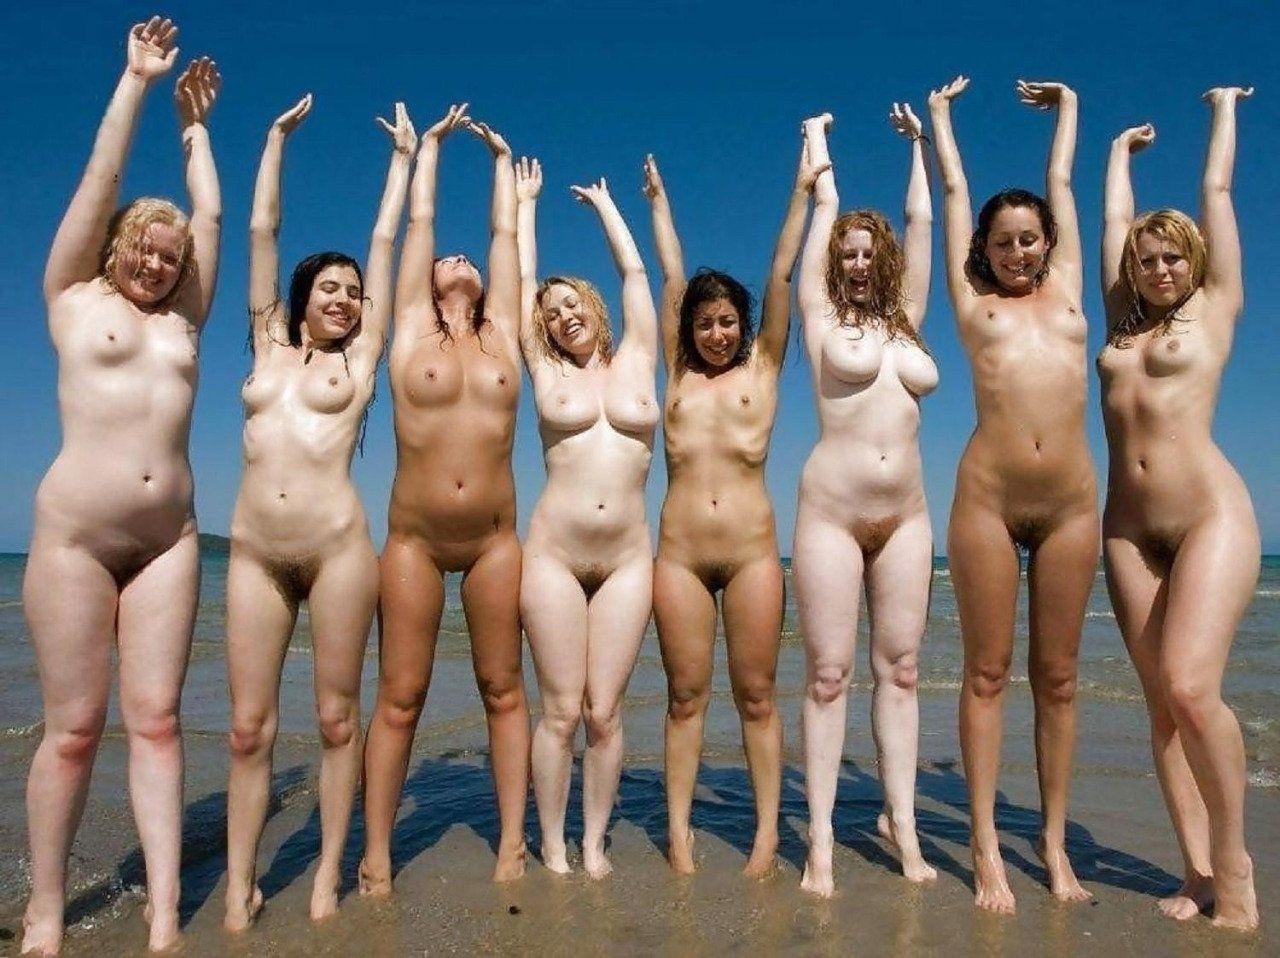 Girl group beach